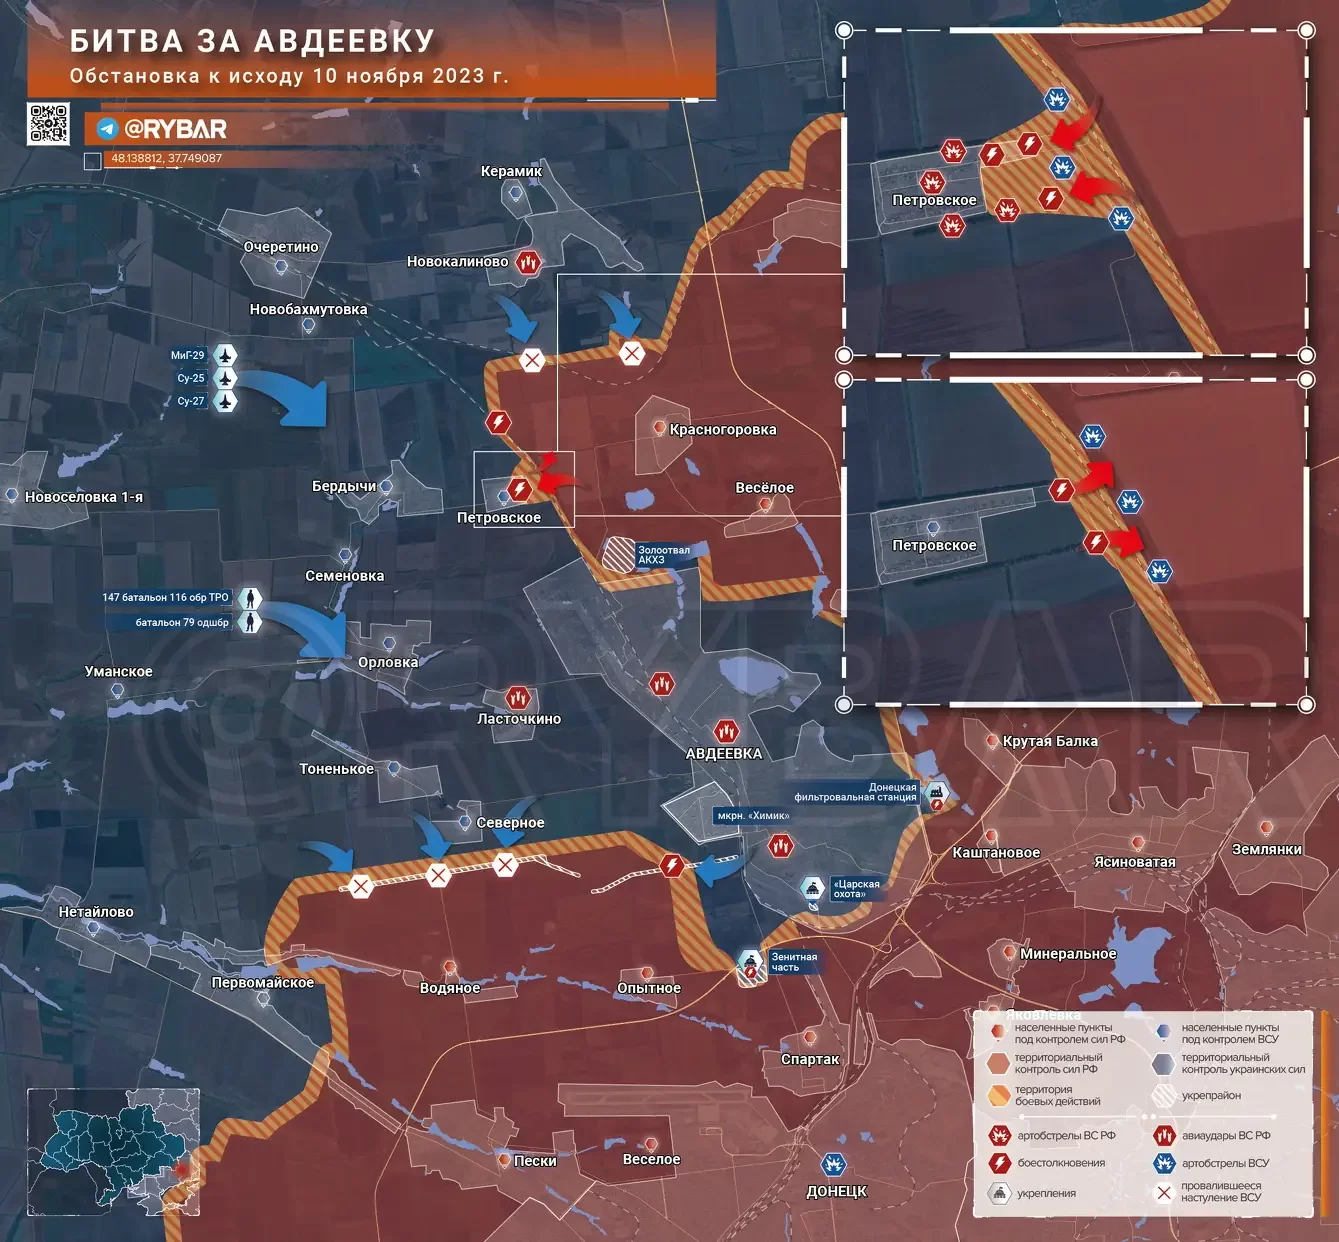 Опубликована актуальная карта боевых действий под Авдеевкой на 11 ноября 2023 года